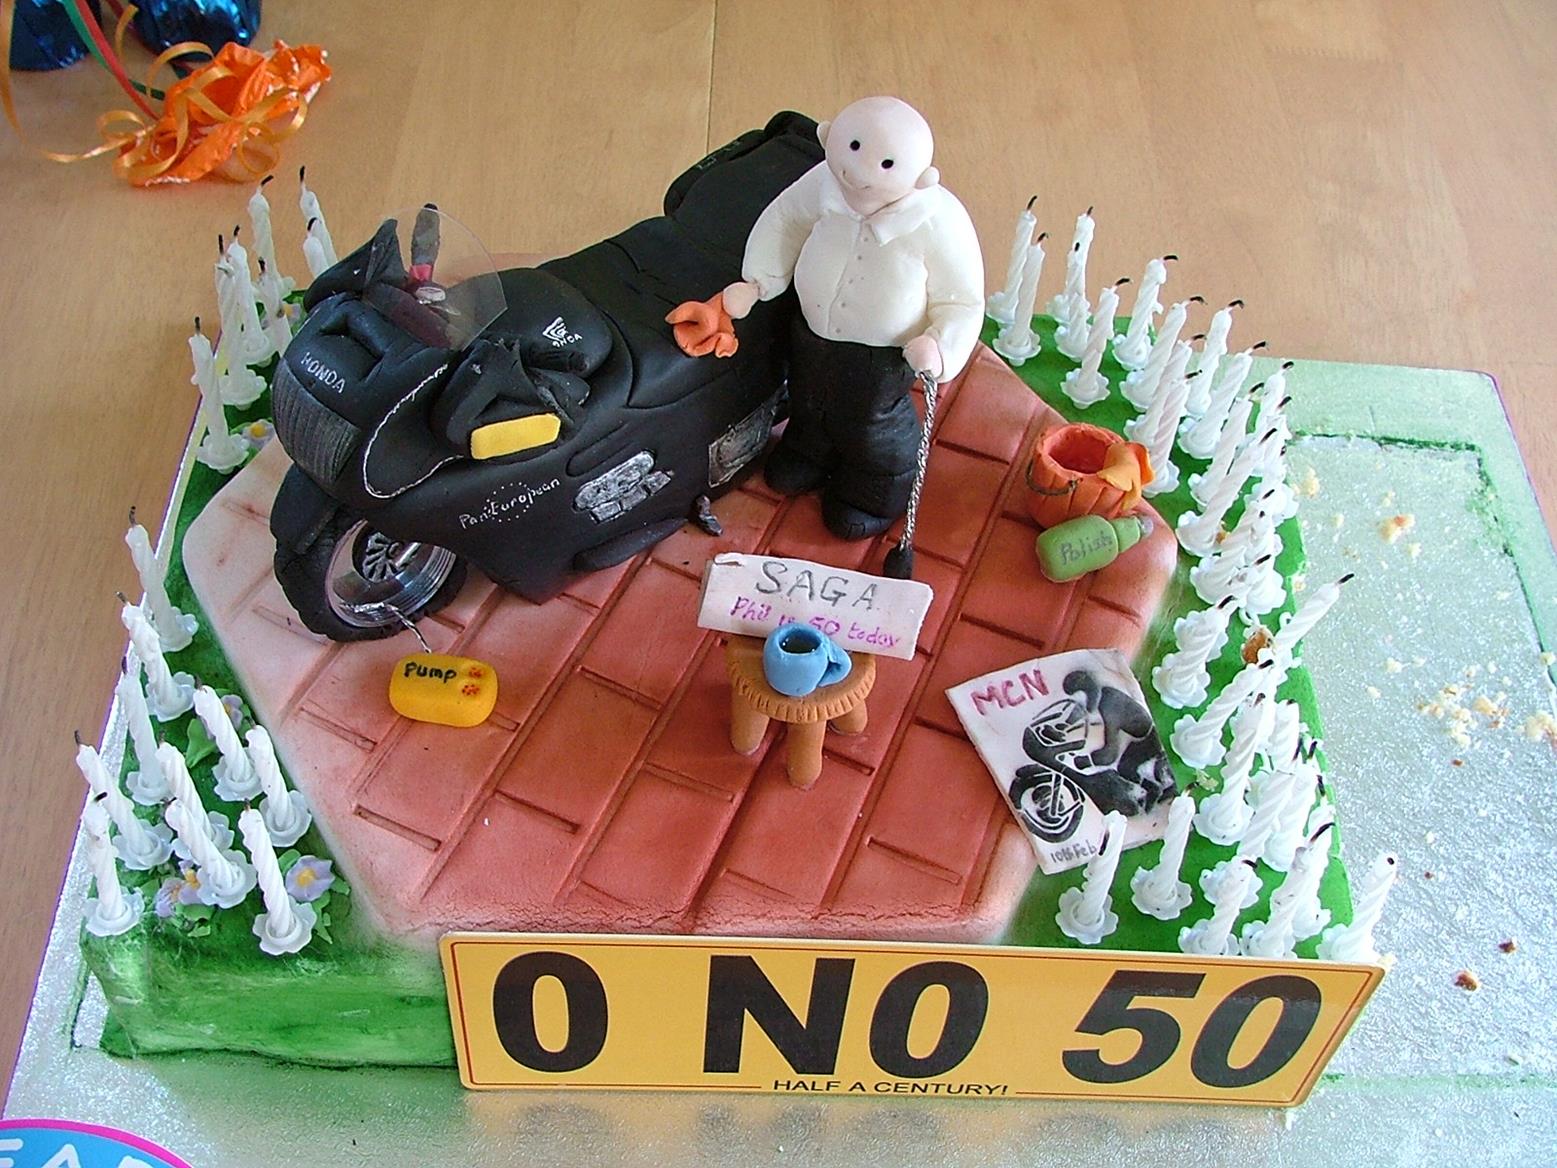 Best Birthday Cake Ever.. #Vtec #honda #dohc #jdm | jdm imports | Flickr